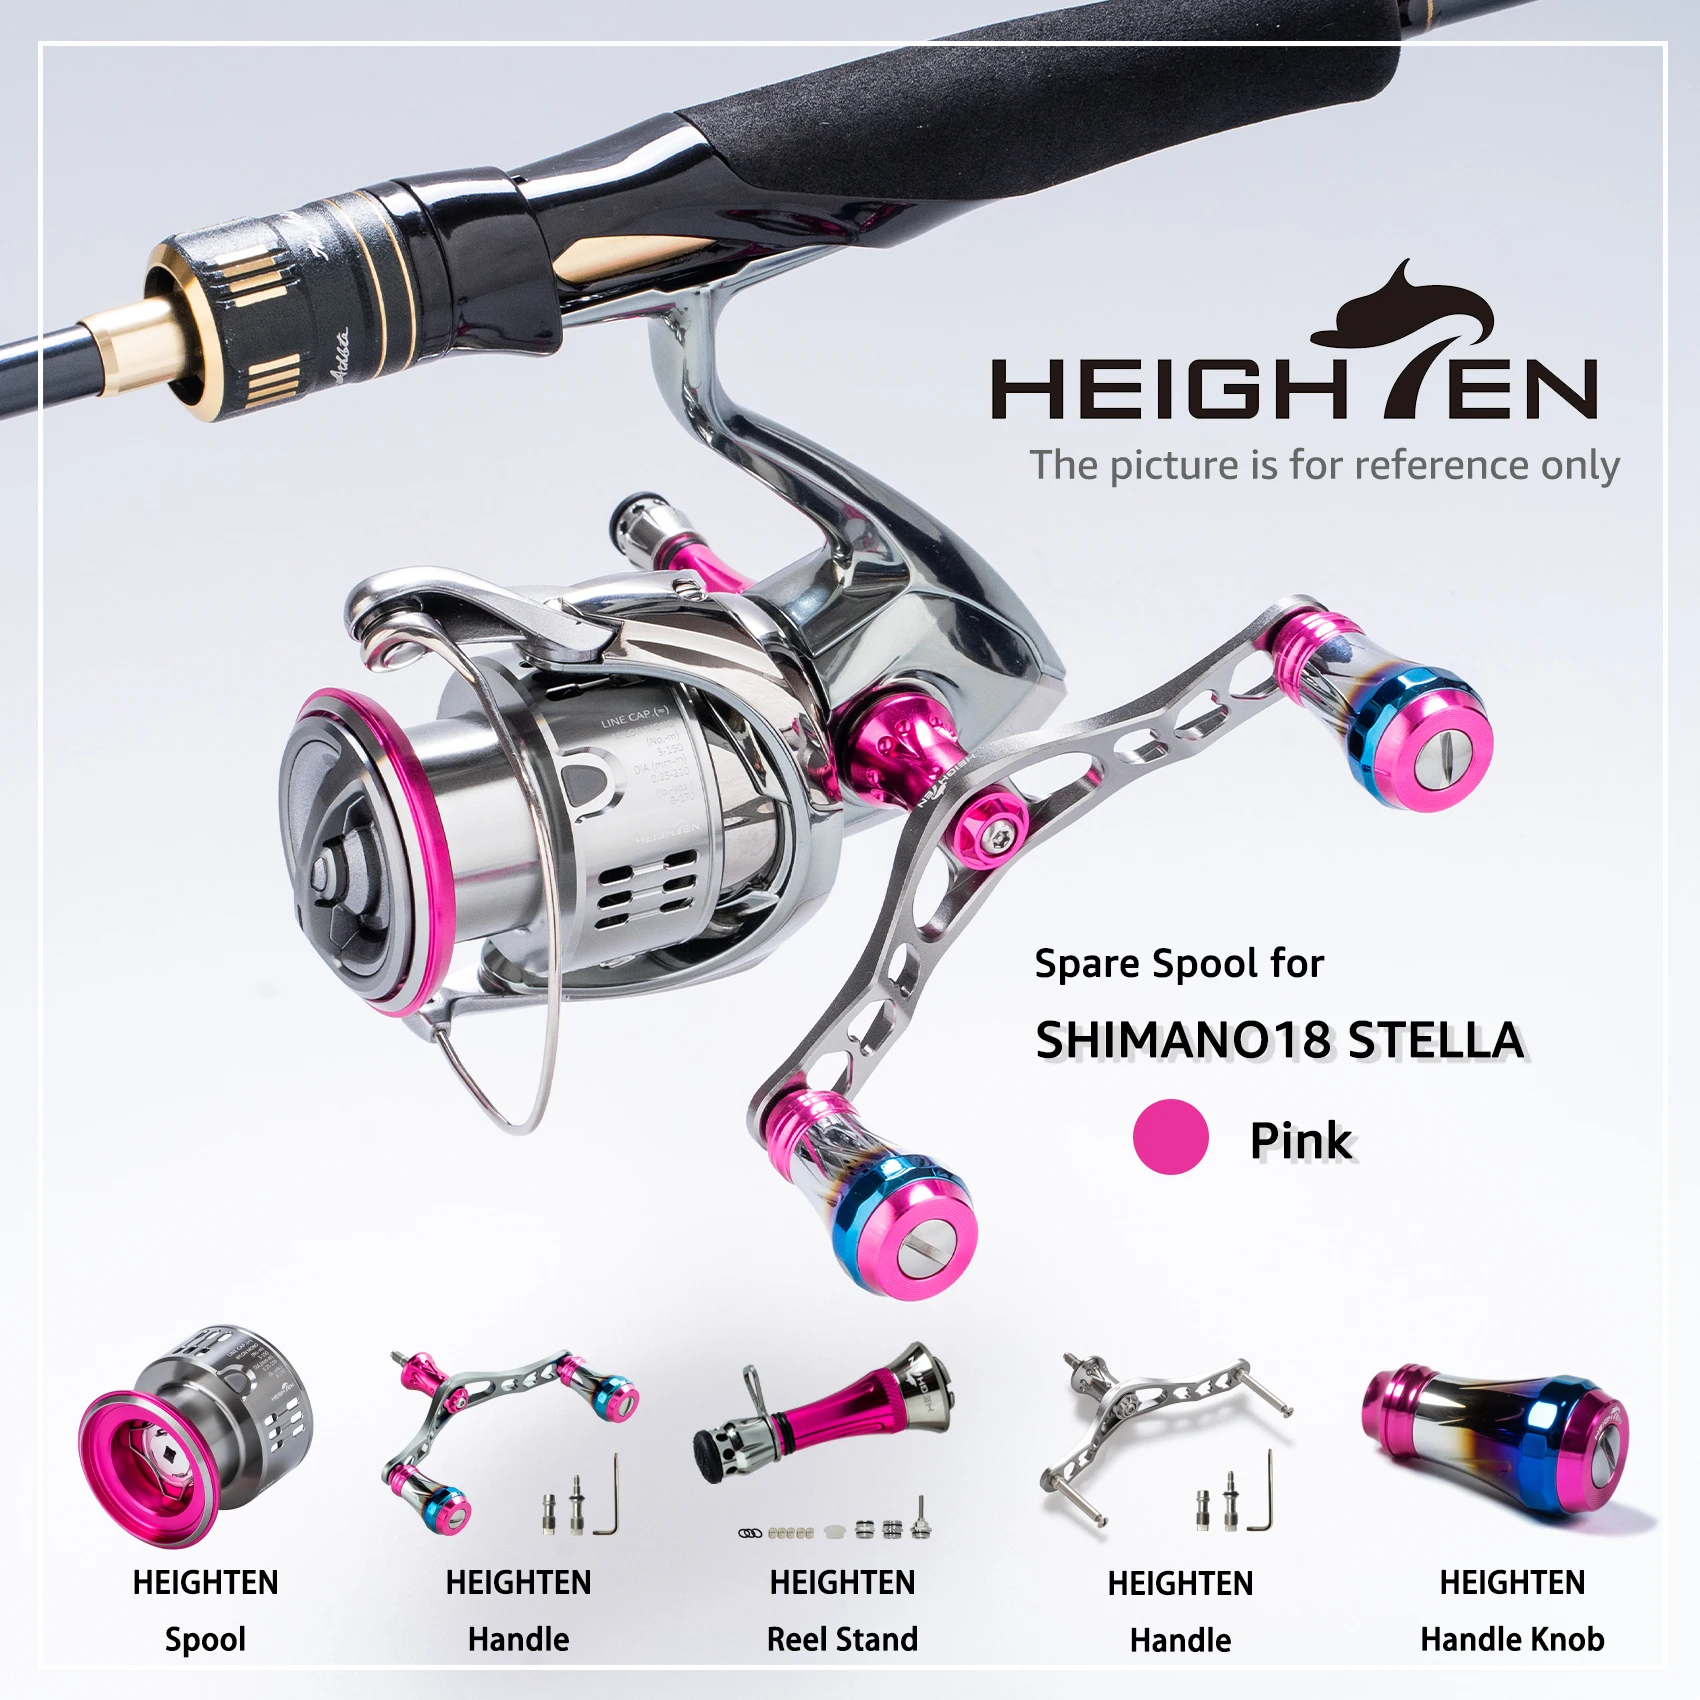 Shimano Fishing Reel Accessories, Heighten Handle Knobs